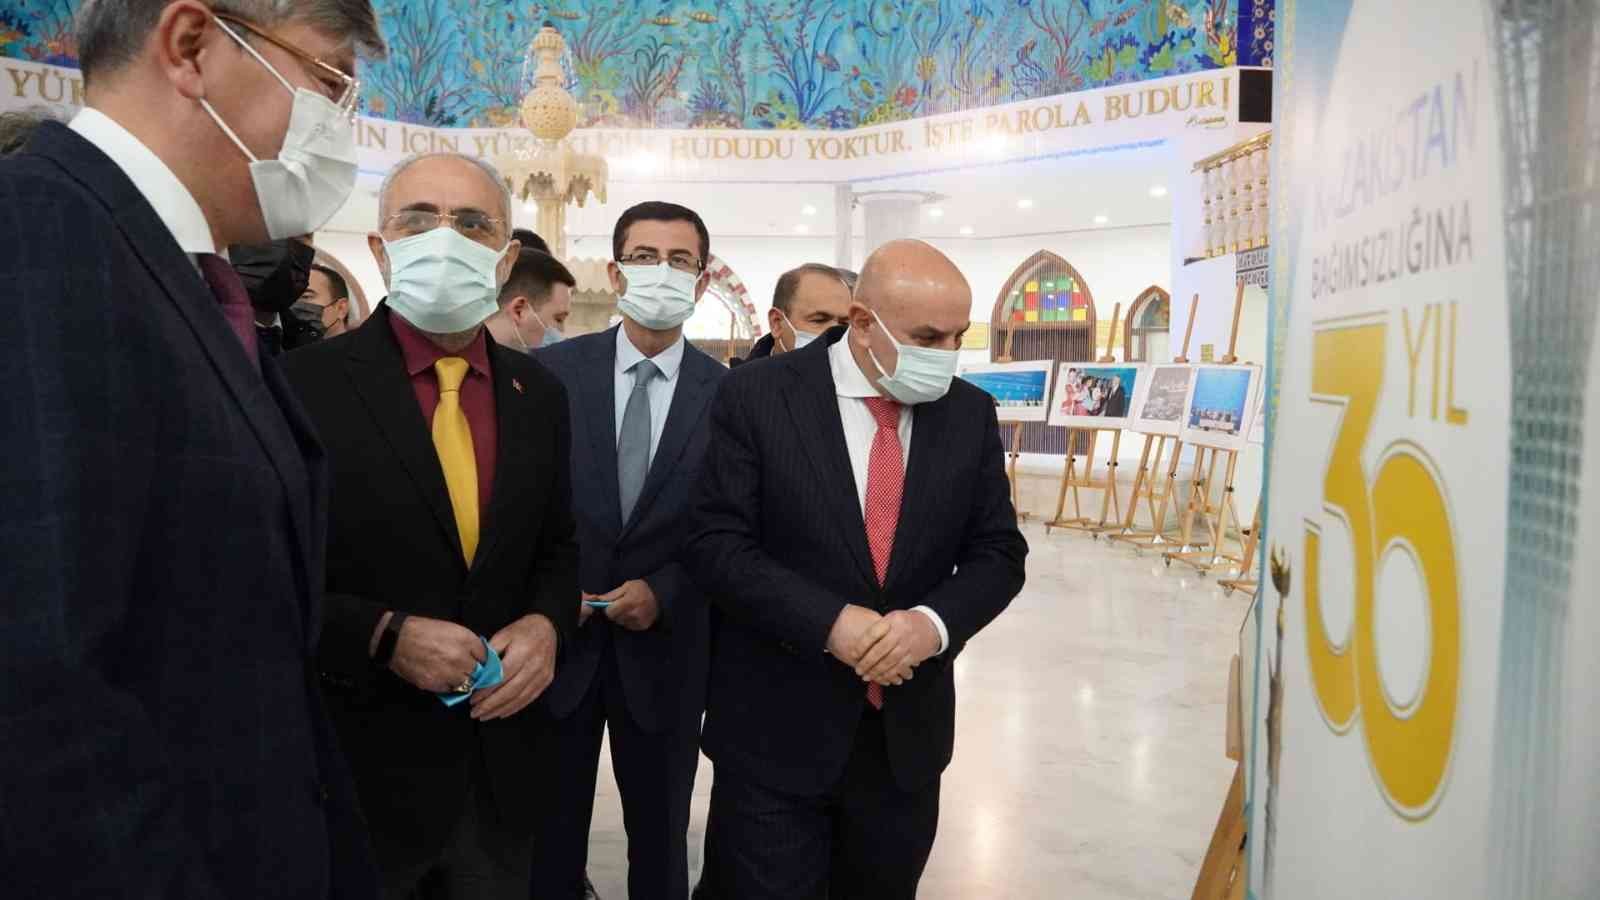 Keçiören’de ‘Kazakistan Cumhuriyeti Kurucu Cumhurbaşkanı Günü’ kutlandı #ankara